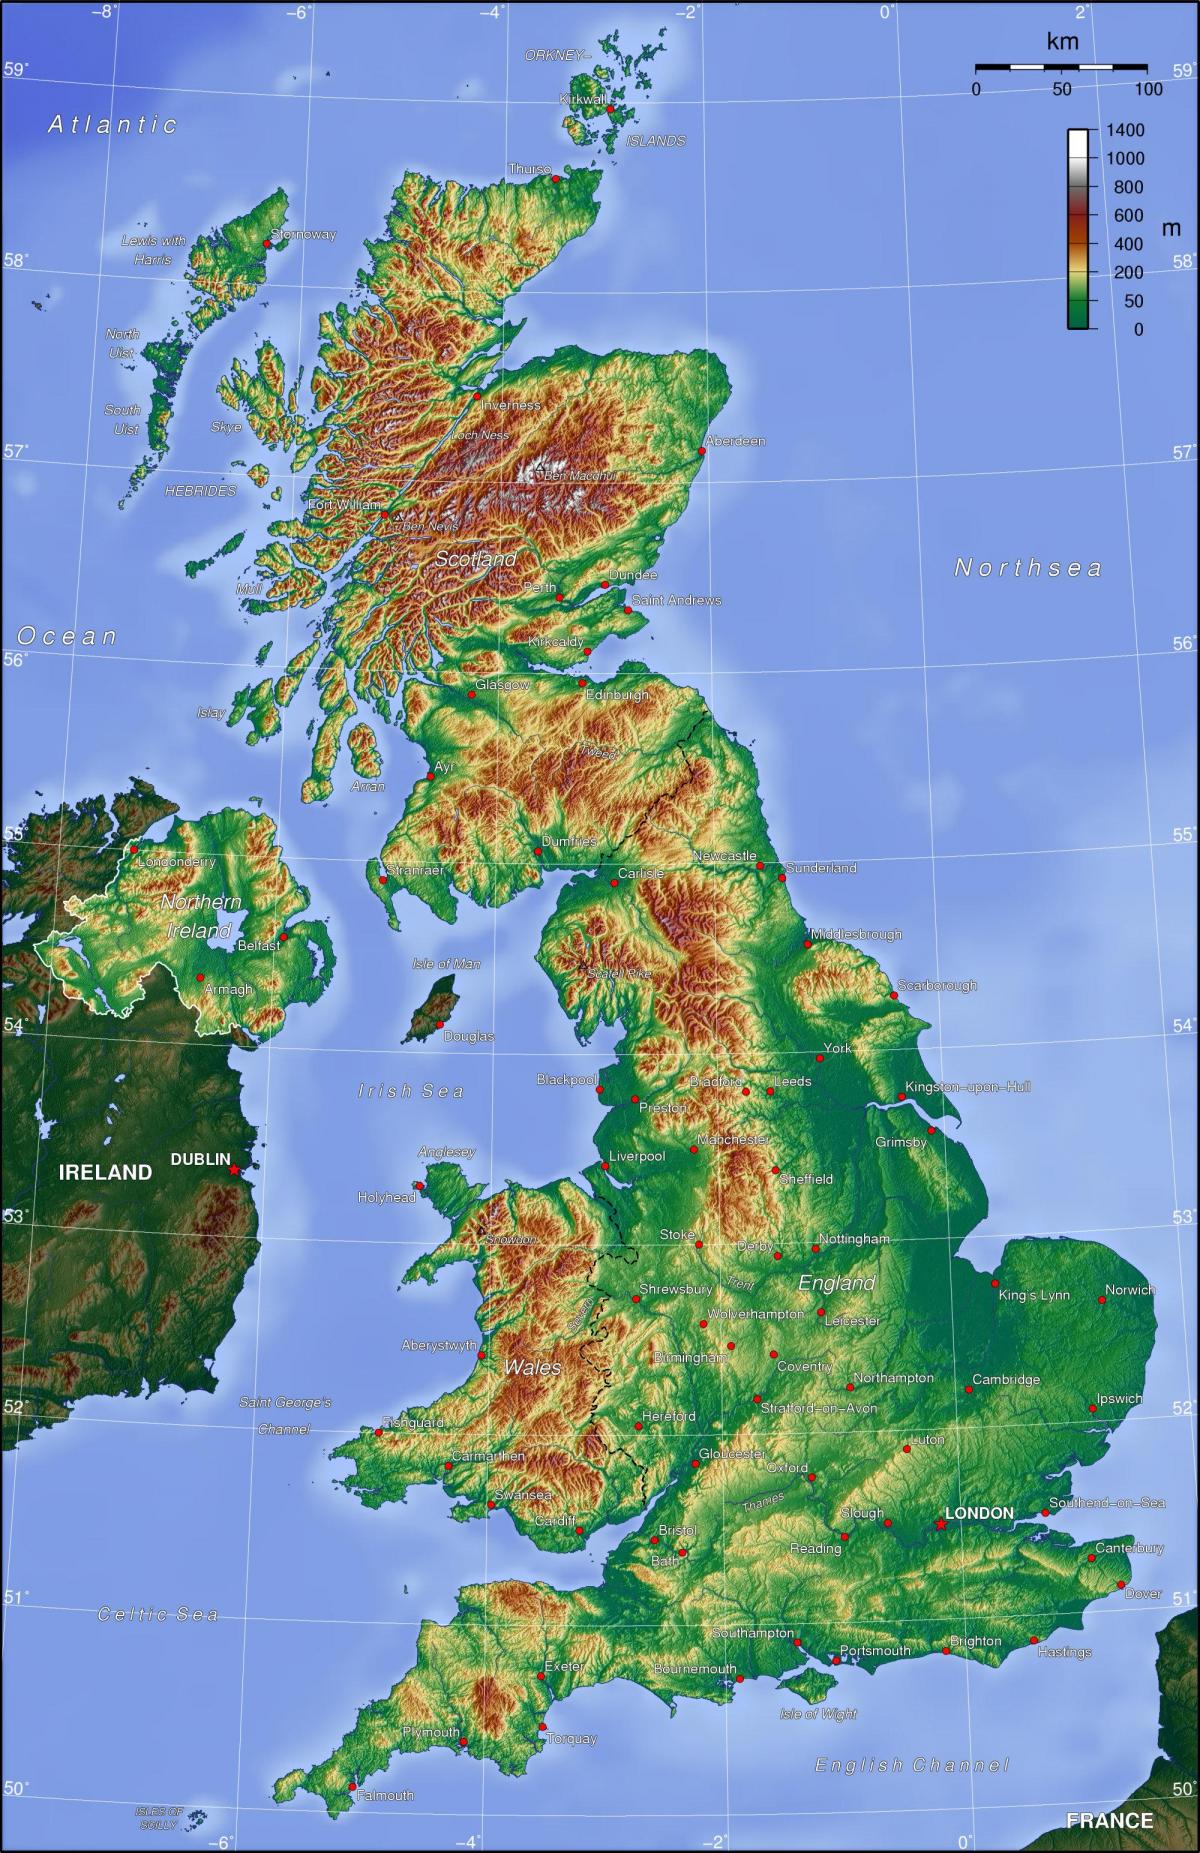 Mappa topografica di Regno Unito (Regno Unito)